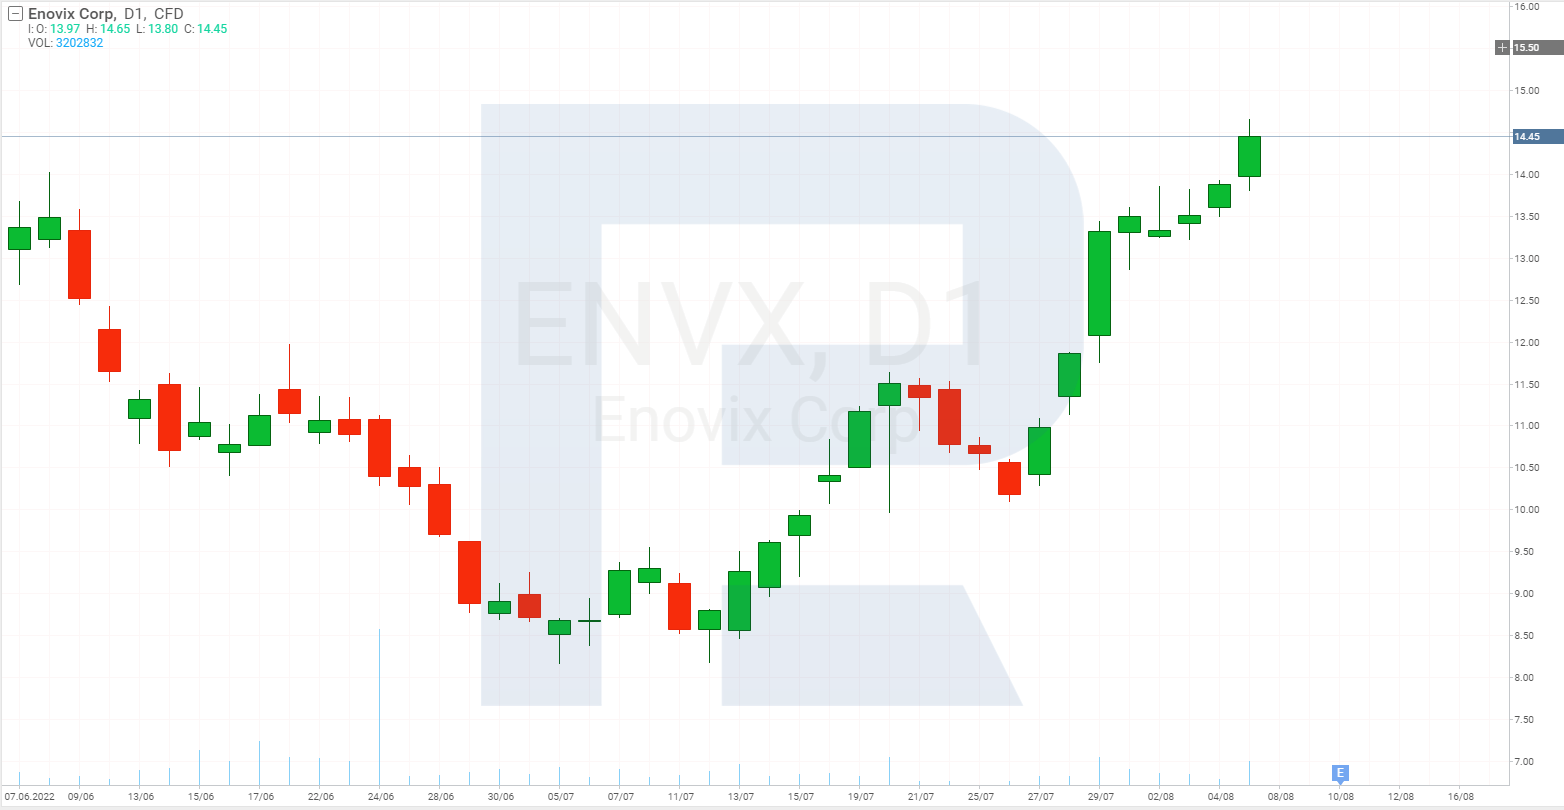 Share price chart of Enovix